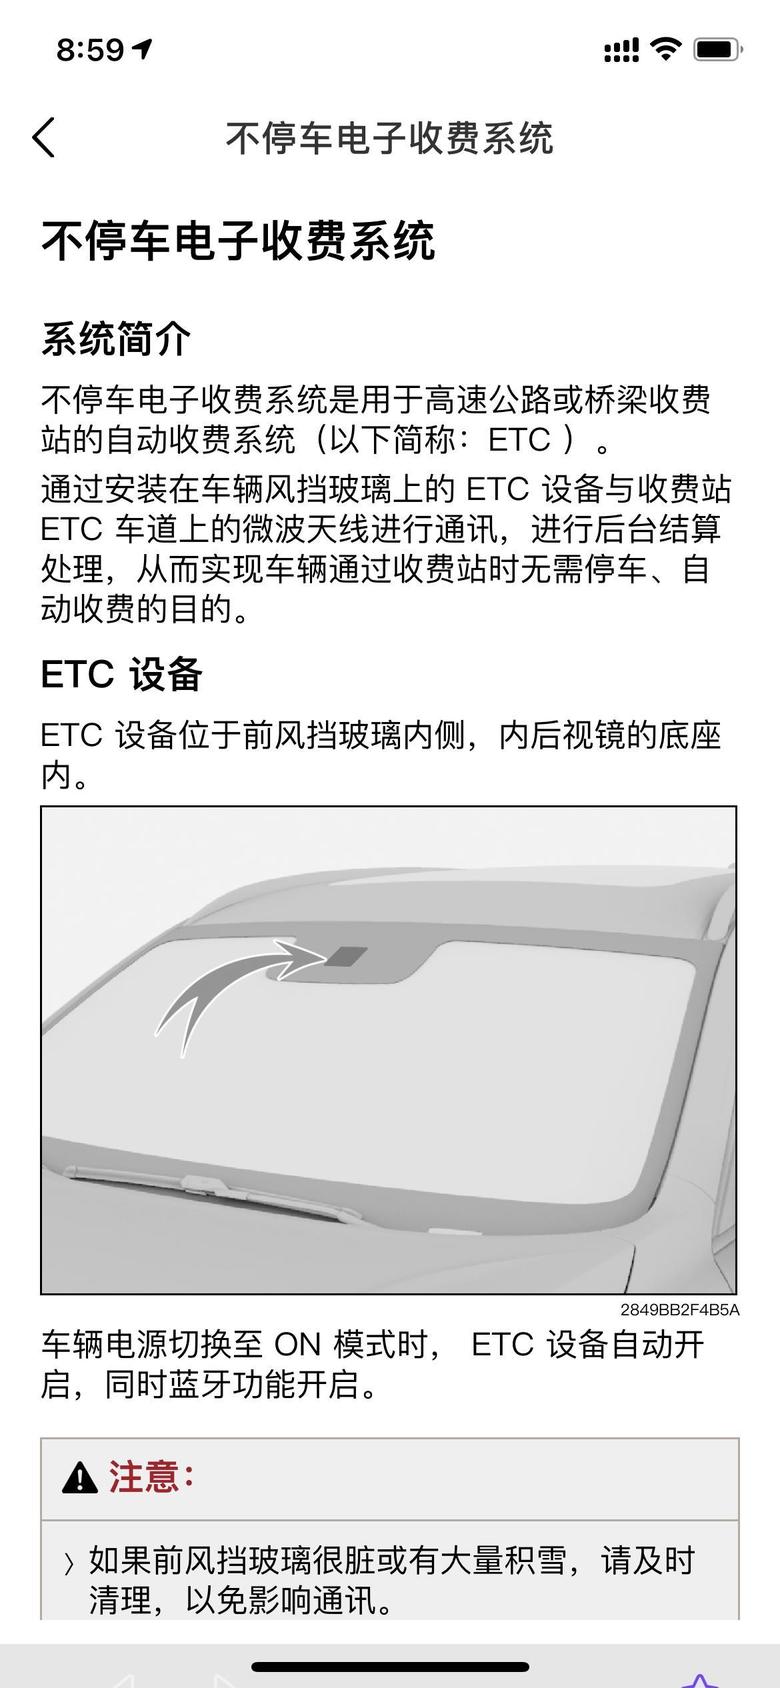 欧拉好猫gt 说明书上显示支持原车自带ETC硬件，但实际不支持。涉嫌宣传欺诈。